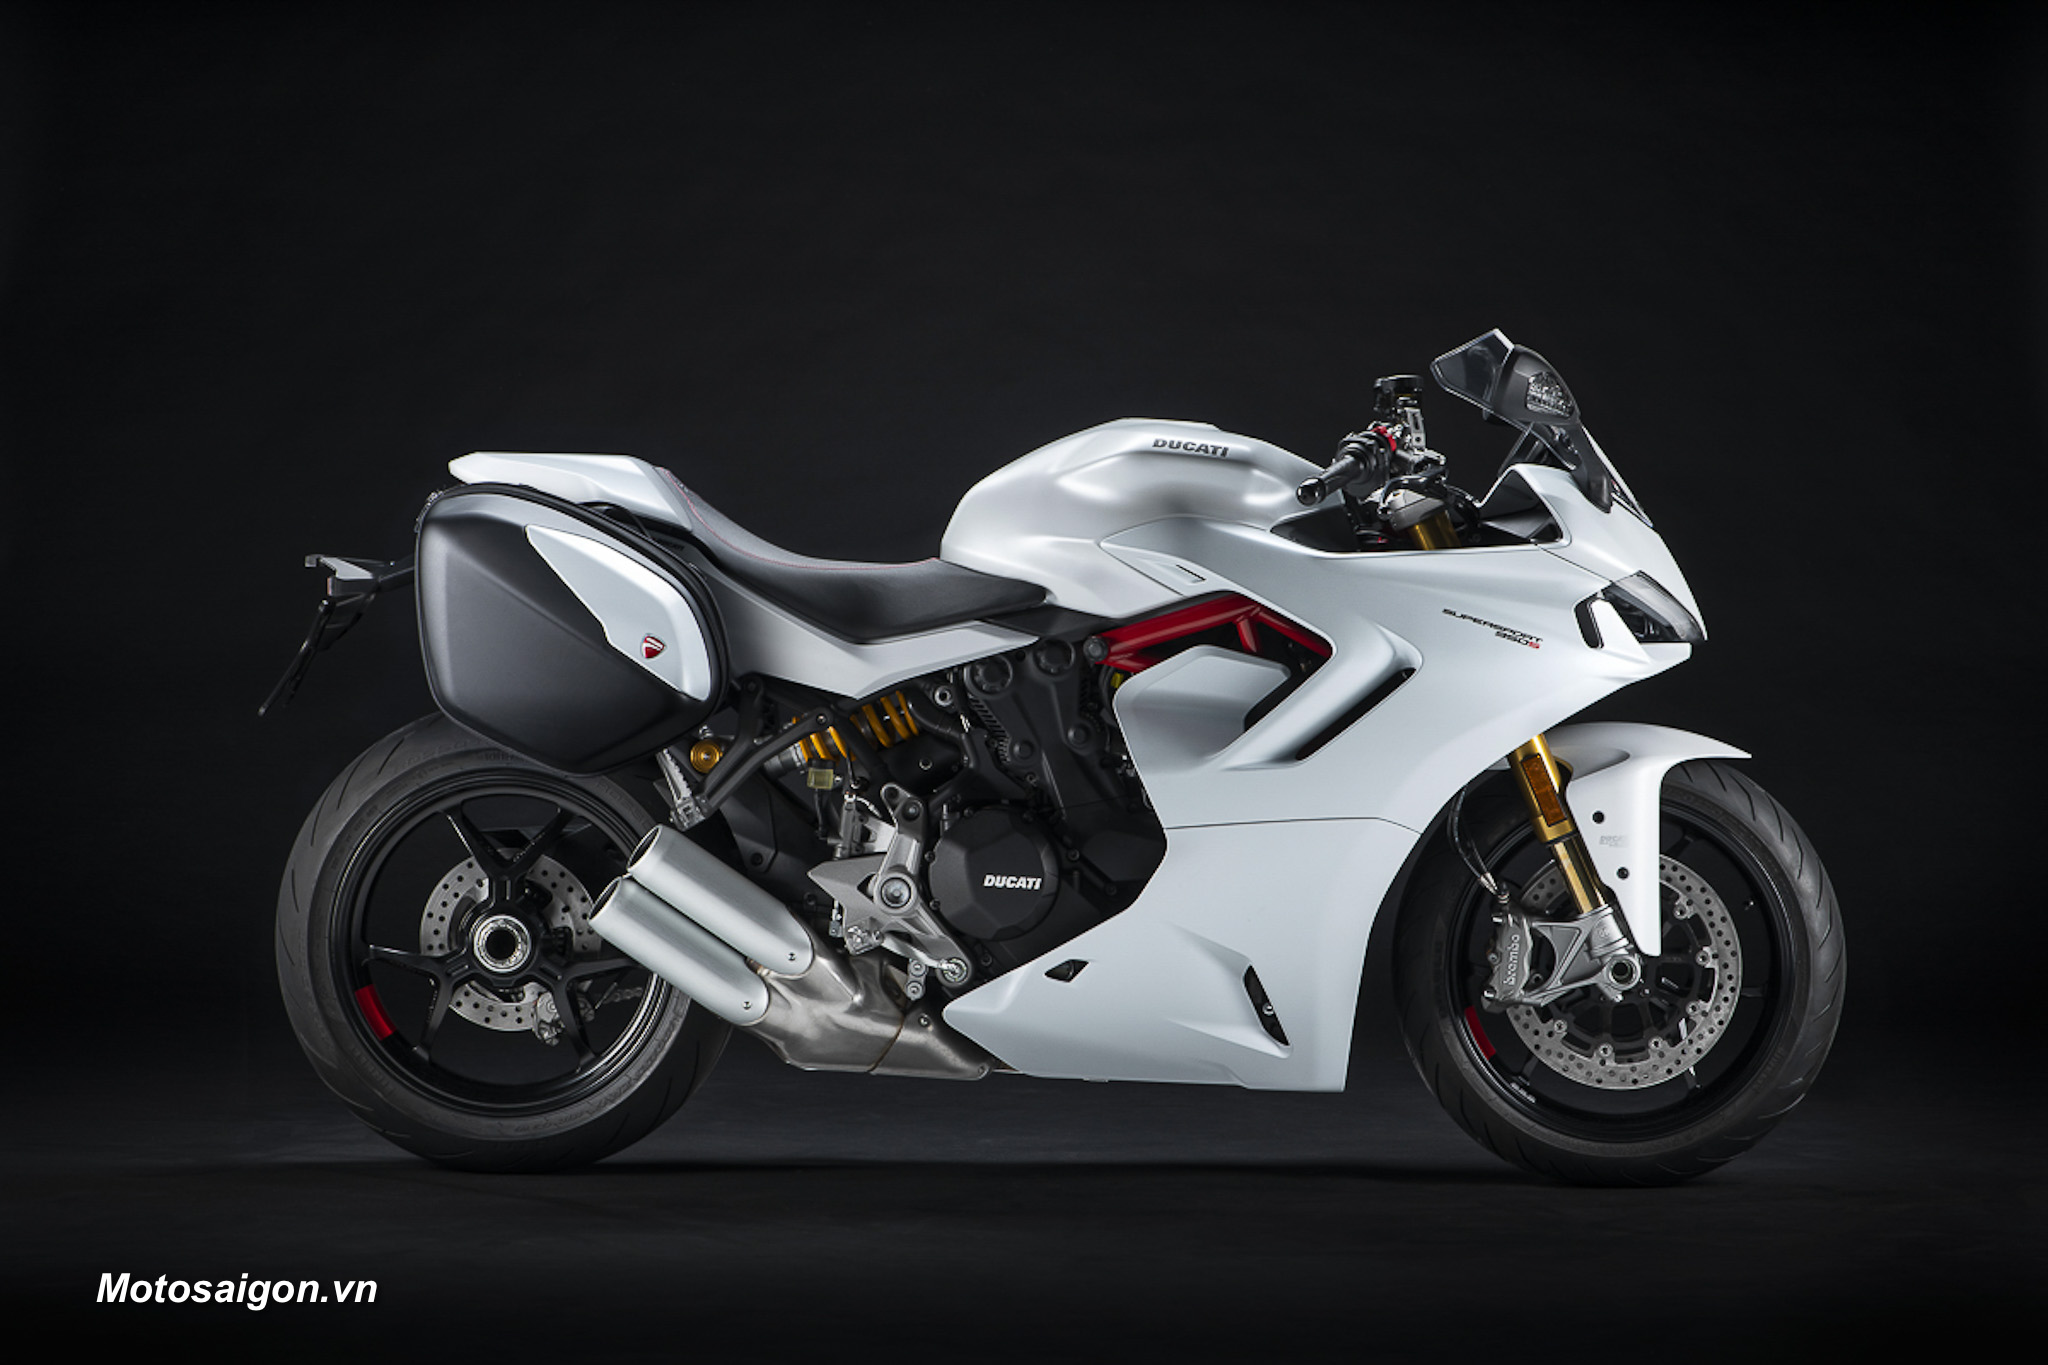 Ducati SuperSport 950 Touring chuẩn bị ra mắt